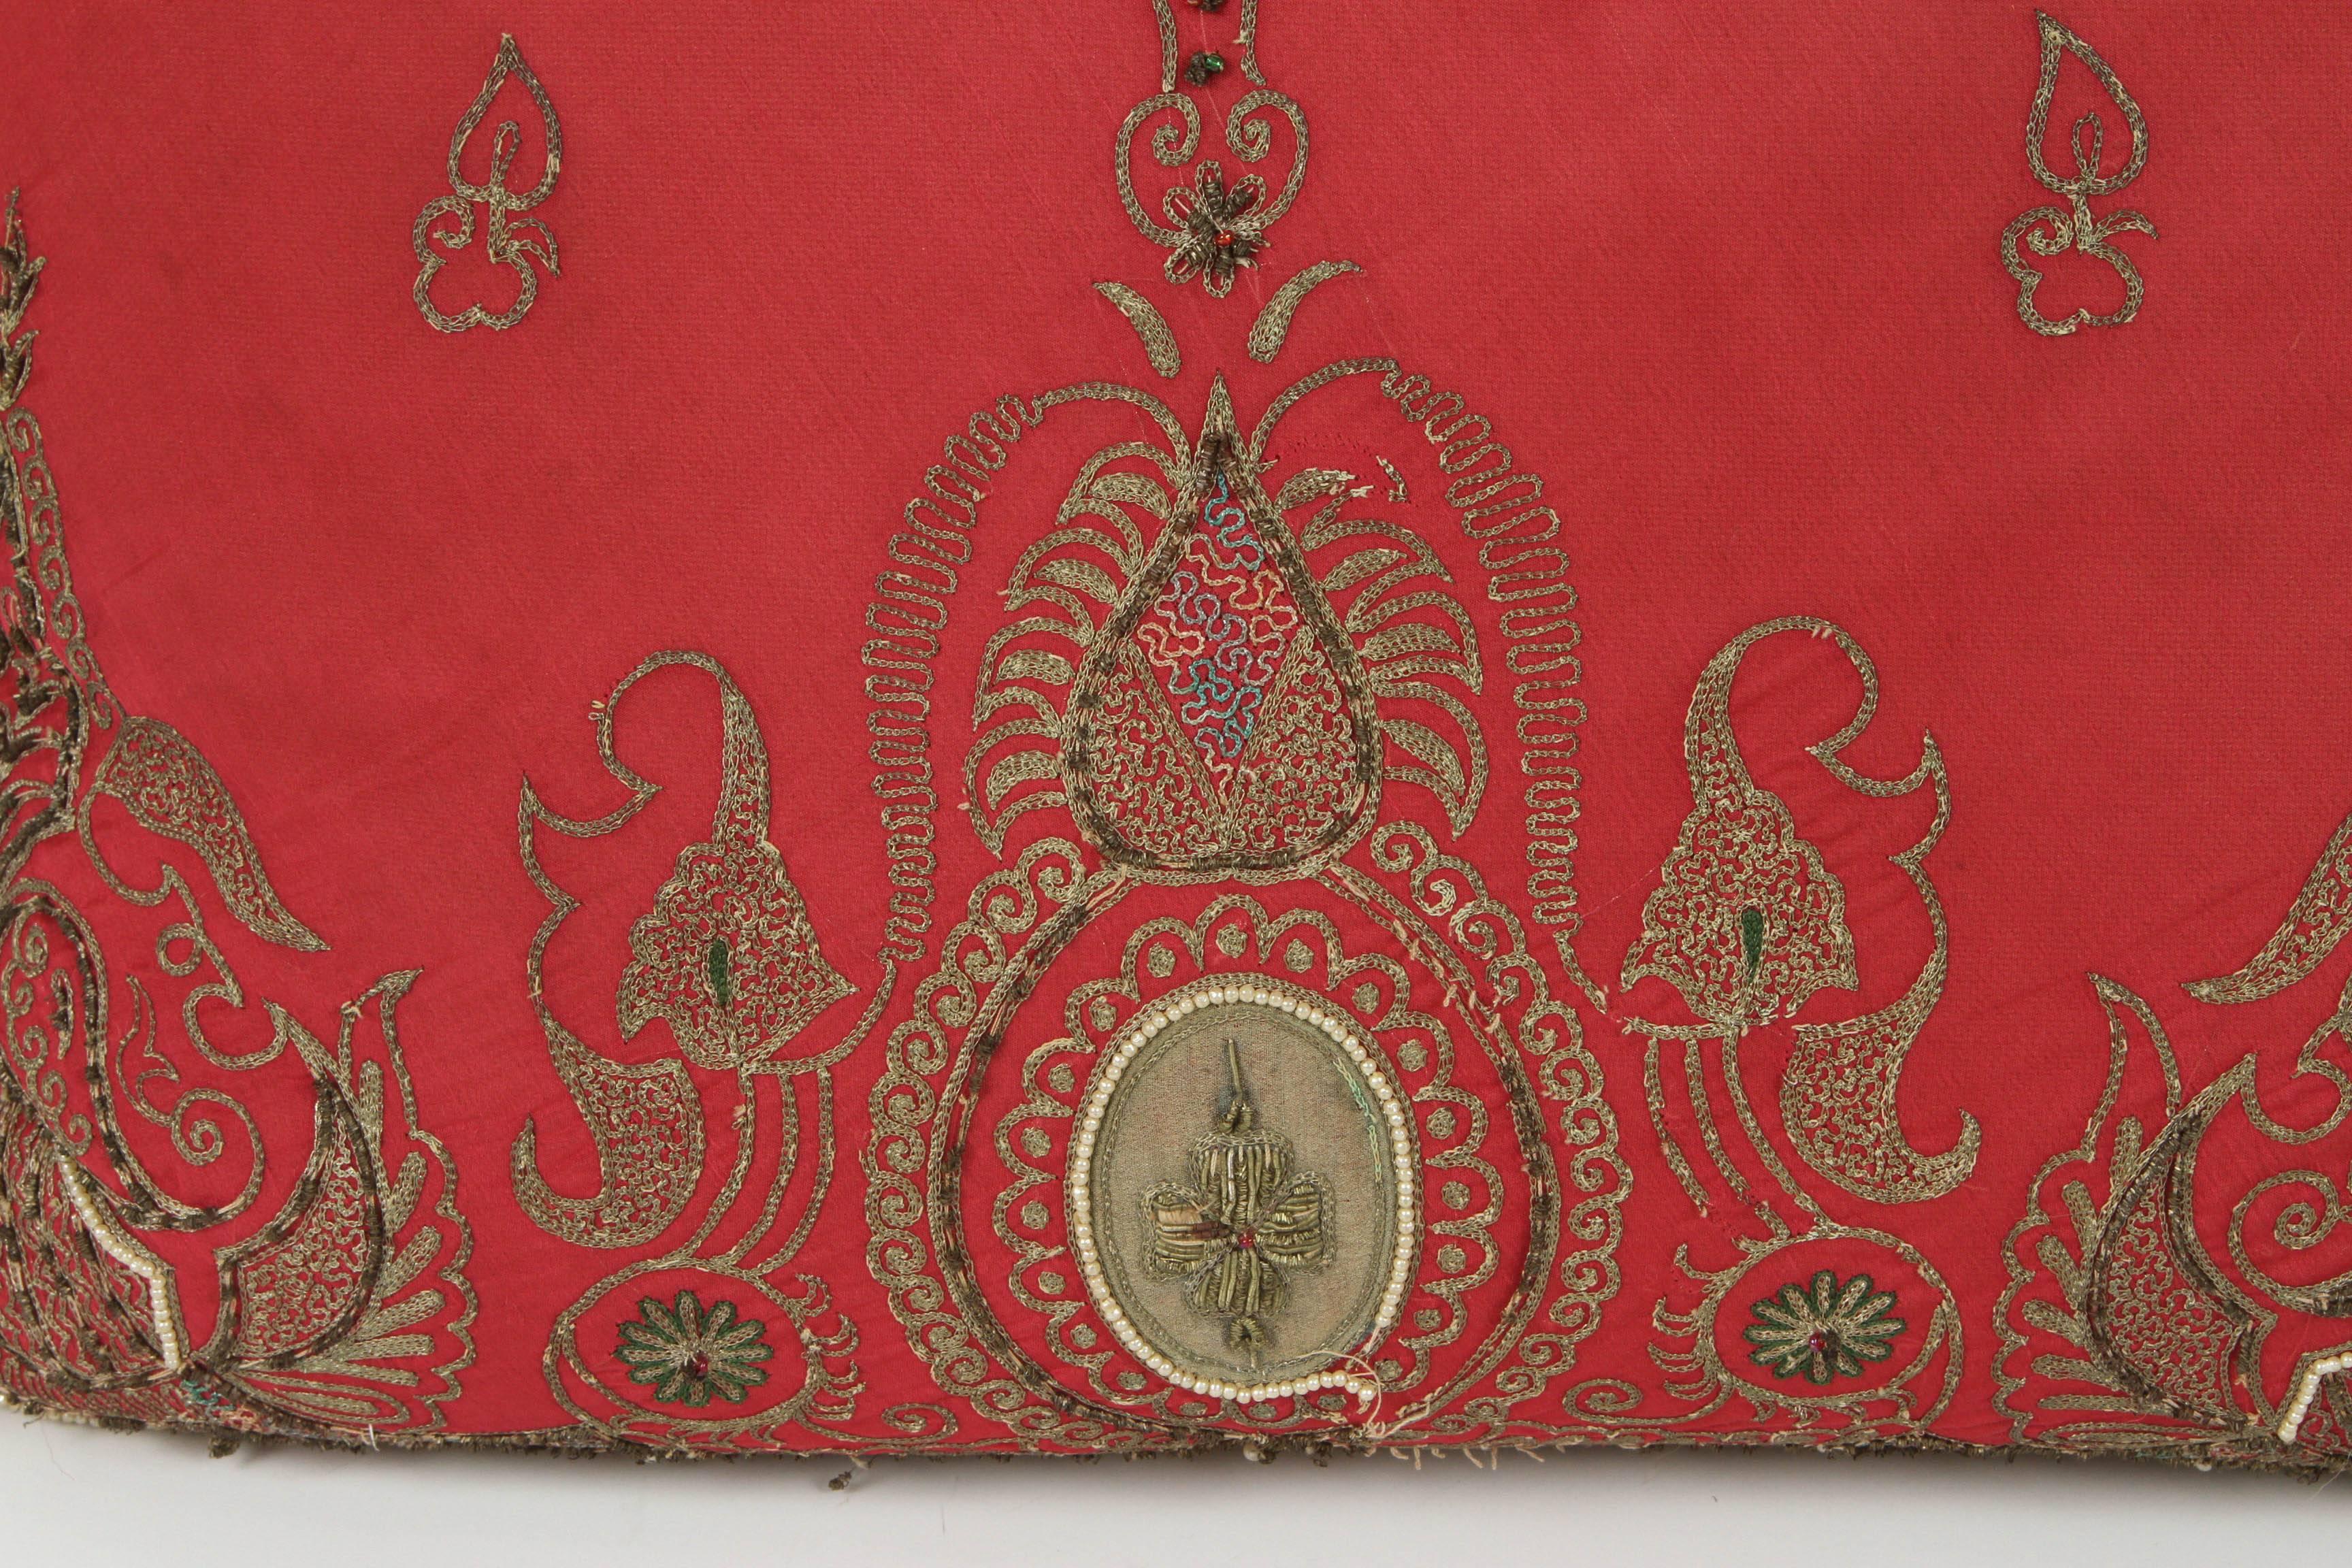 Moorish Antique Turkish Ottoman Silk Pillows with Metallic Threads a Pair